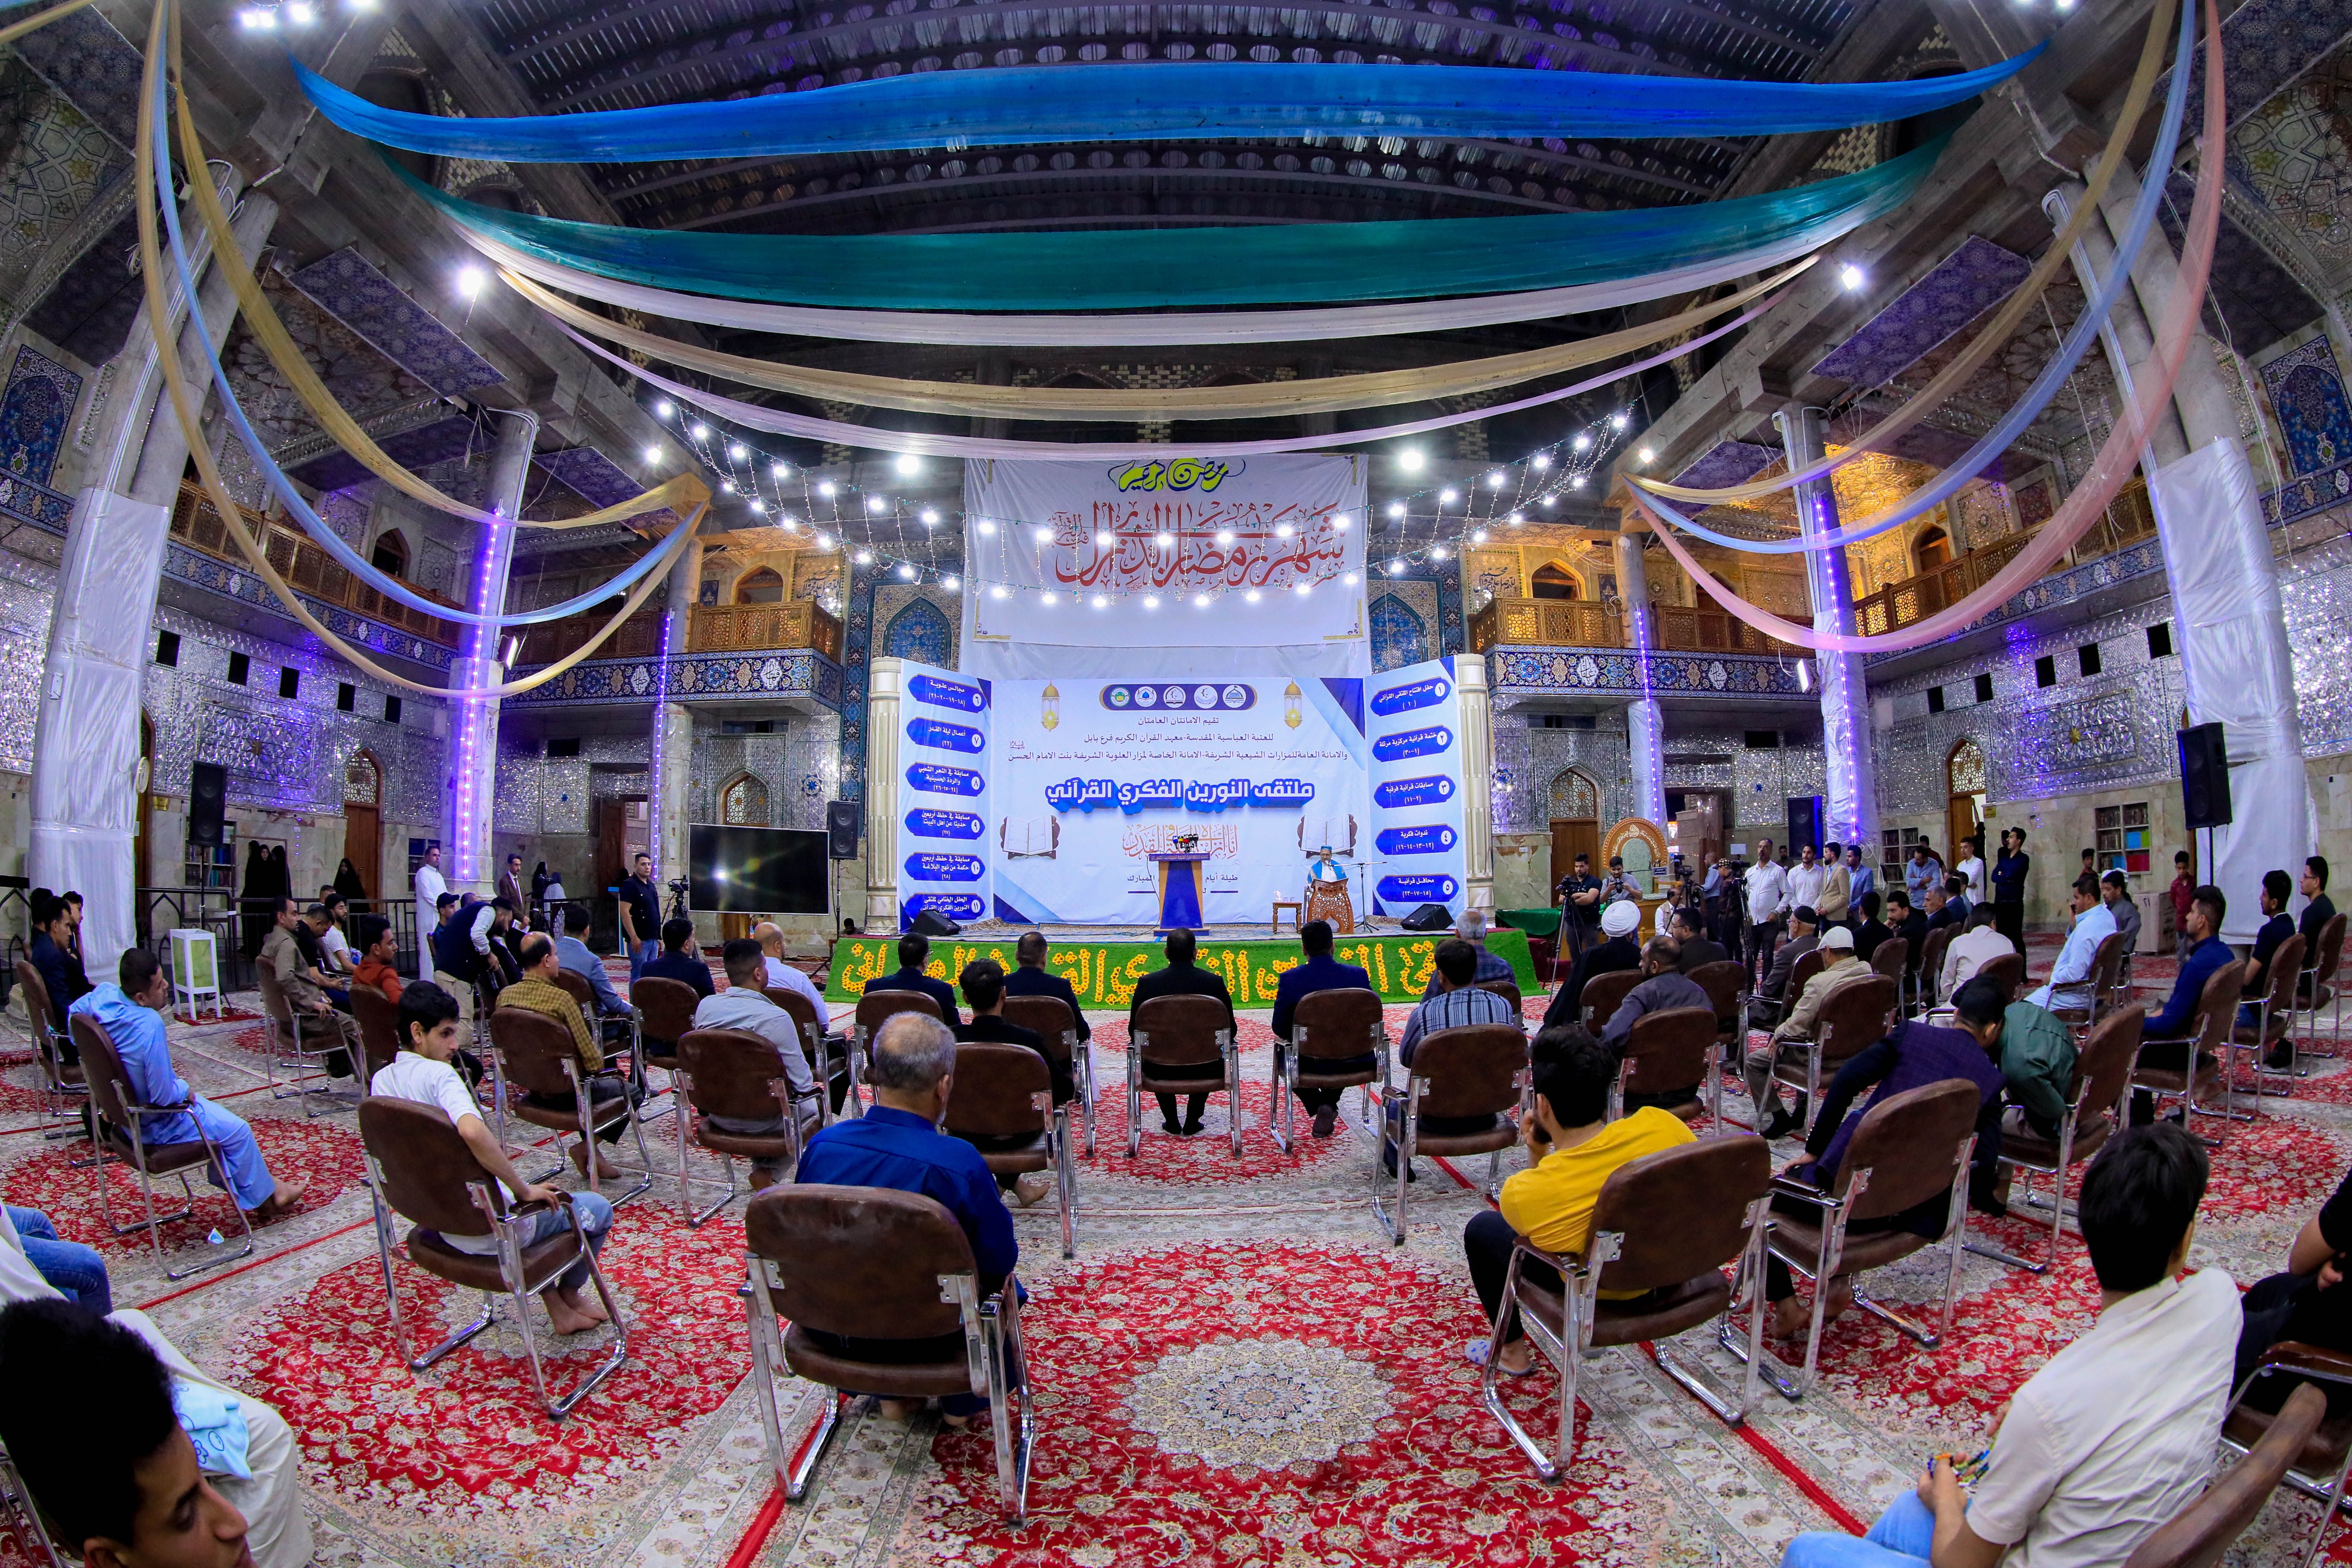 انطلاق فعاليات أكبر ملتقى قرآني على مستوى العراق في بابل